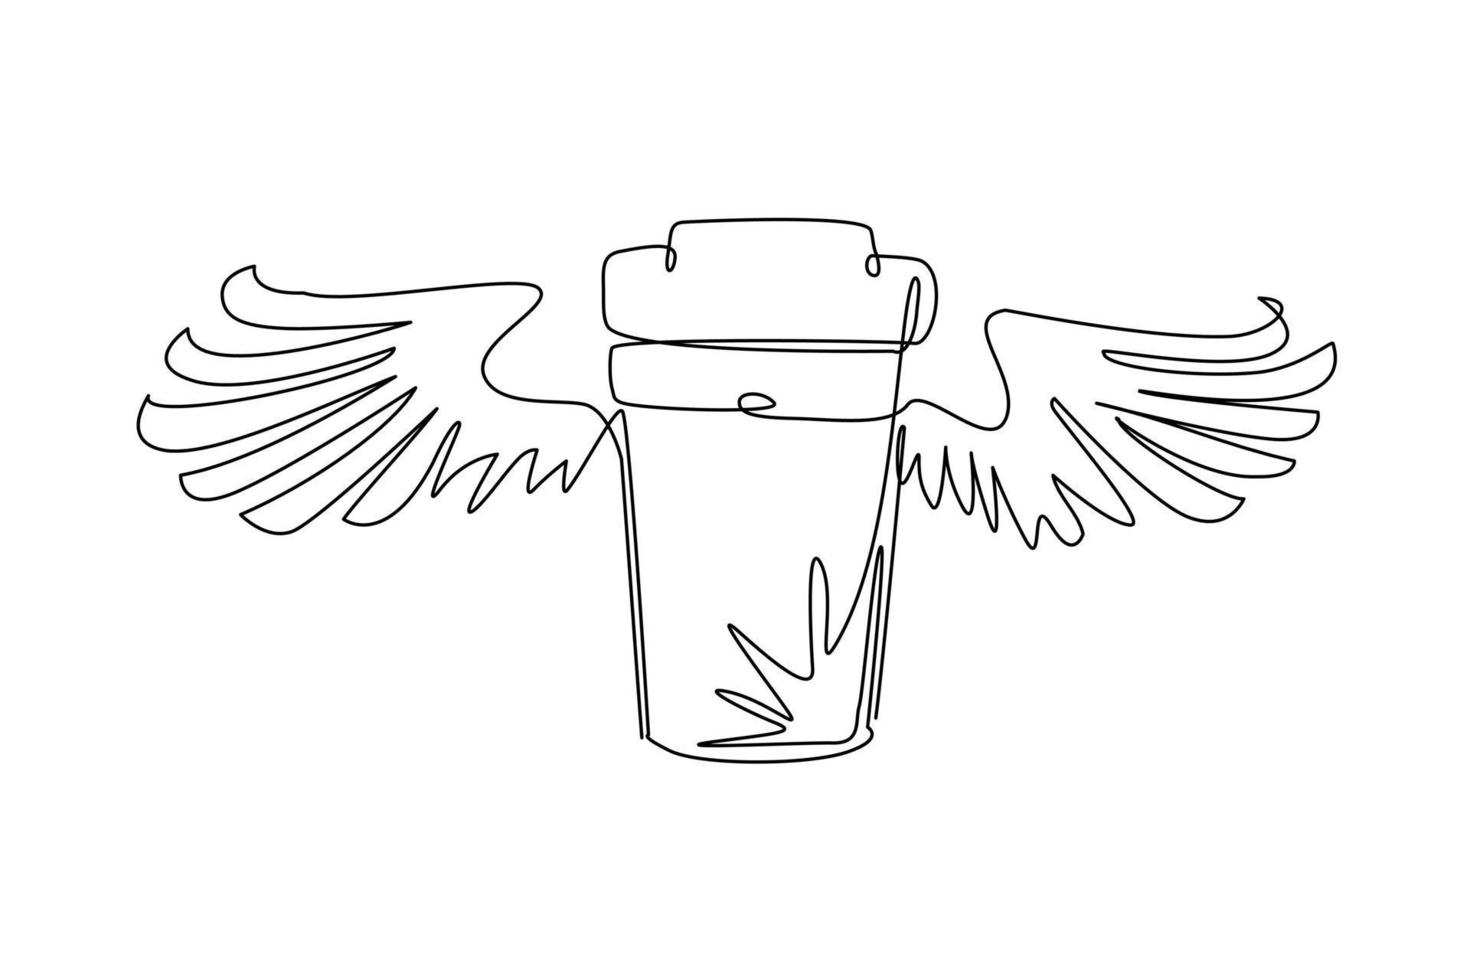 une seule ligne continue dessinant une tasse de café volante à emporter avec des ailes. tasse de café en carton jetable. icône de conteneur de papier. restauration rapide, programme de livraison de repas. une ligne dessiner vecteur de conception graphique